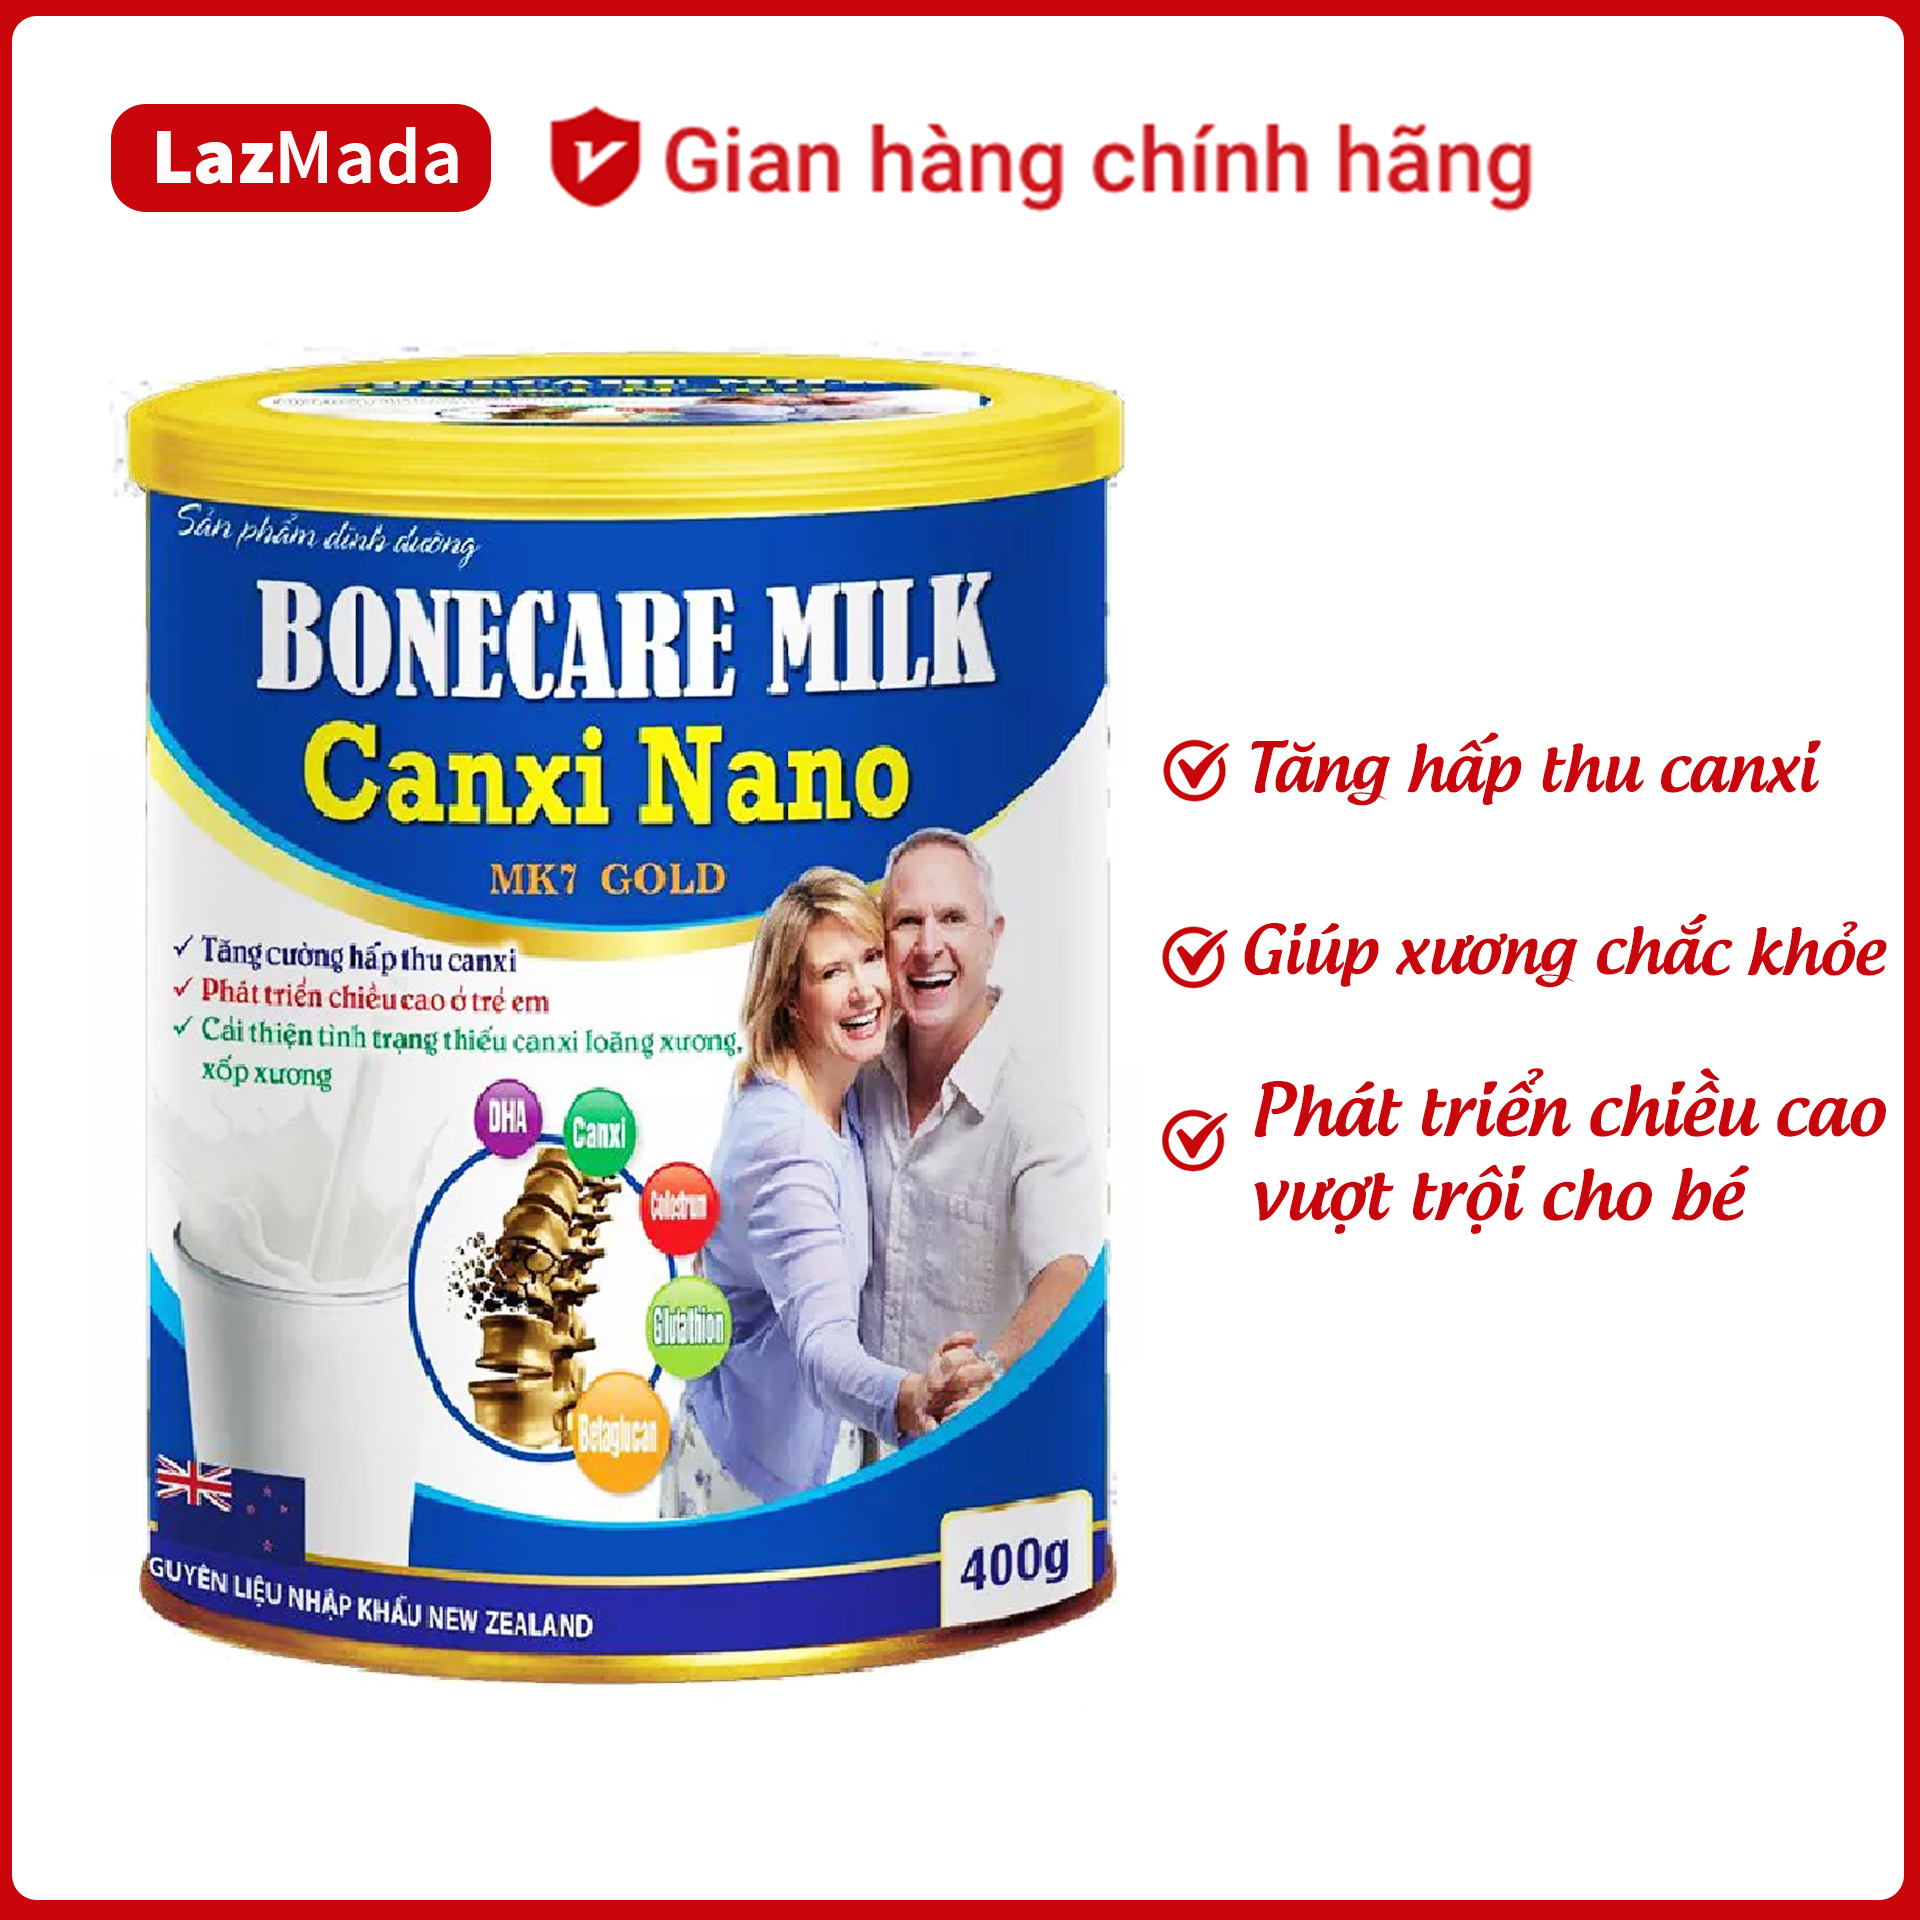 Sữa giảm đau nhức xương khớp ngừa loãng xương Bonecare Milk Canxi Nano MK7 hấp thu canxi tăng chiều cao chắc khỏe xương khớp - Hộp 400g